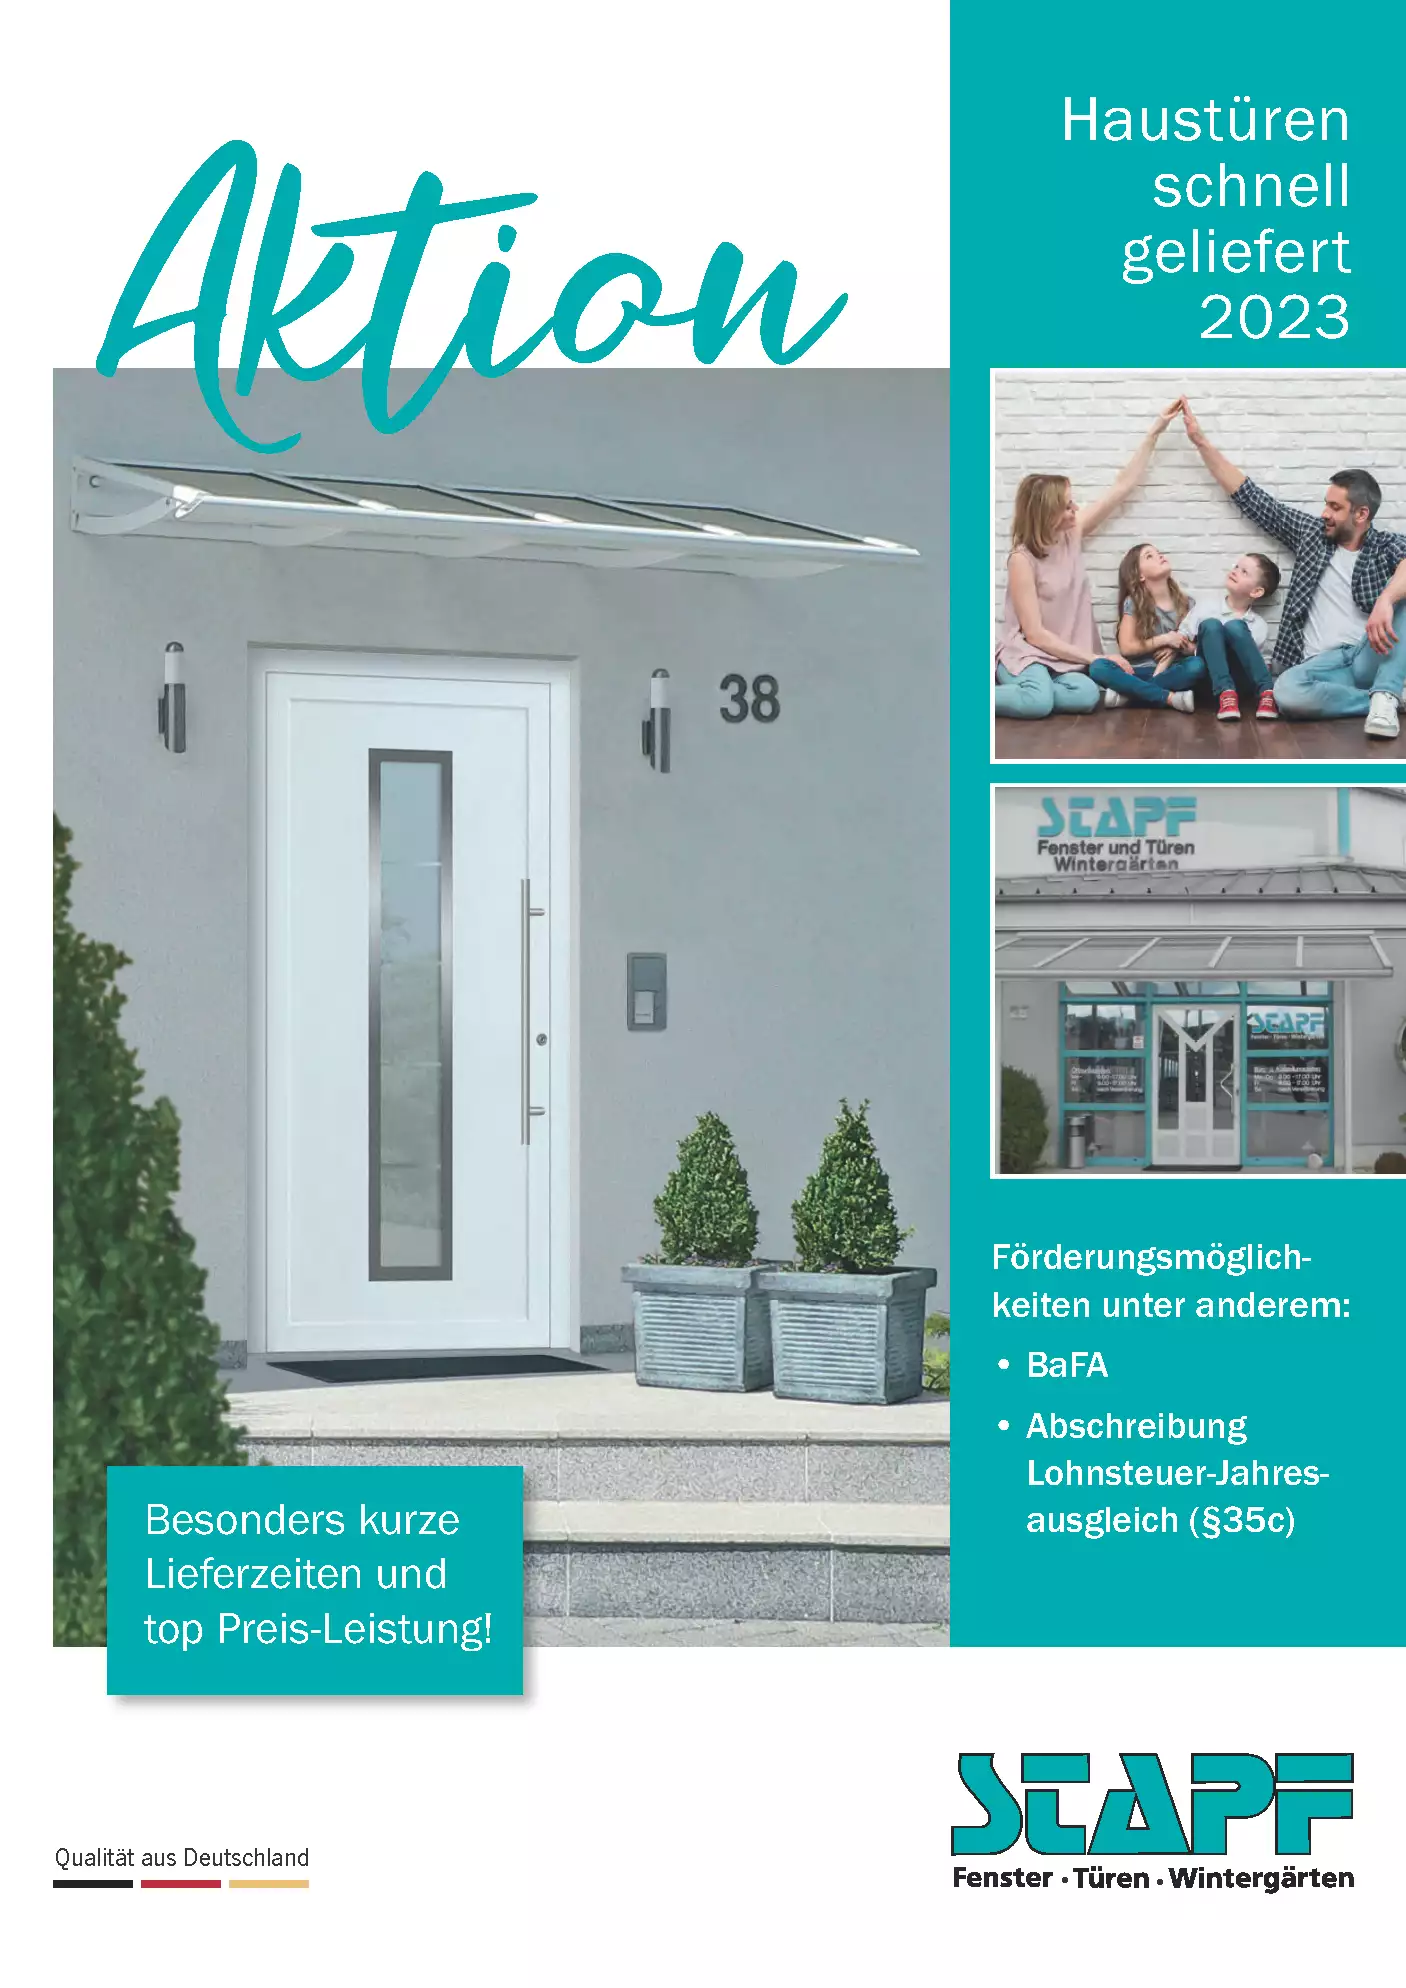 Haustüren schnell geliefert 2023 bei Stapf Fenster und Türen GmbH in Bamberg Hallstadt